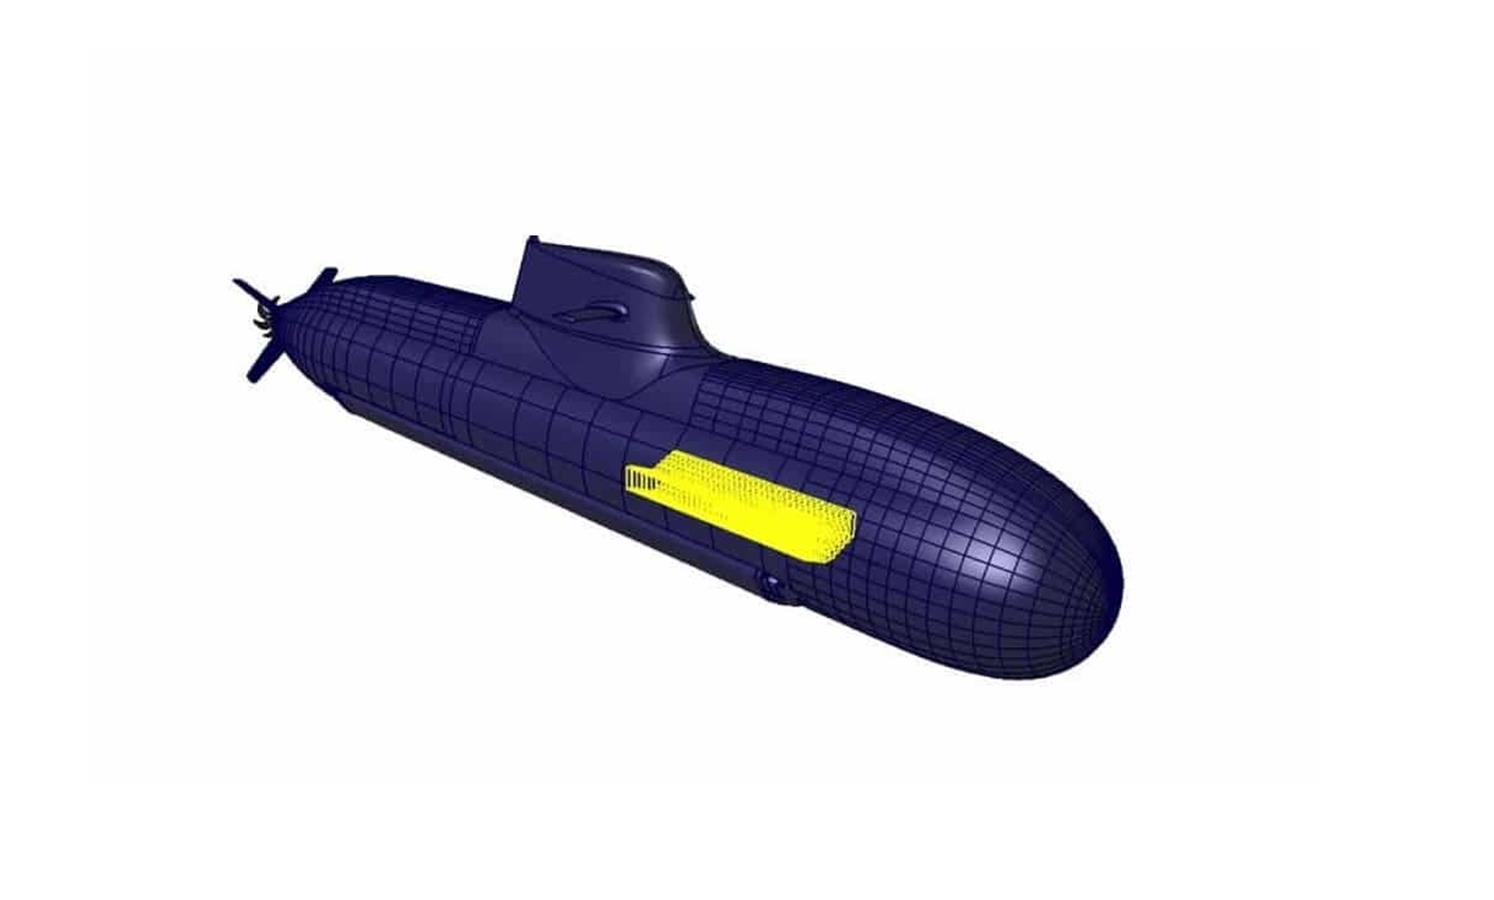 Akumulatory dla okrętów podwodnych projektu U212 NFS, projektu U212 NFS,